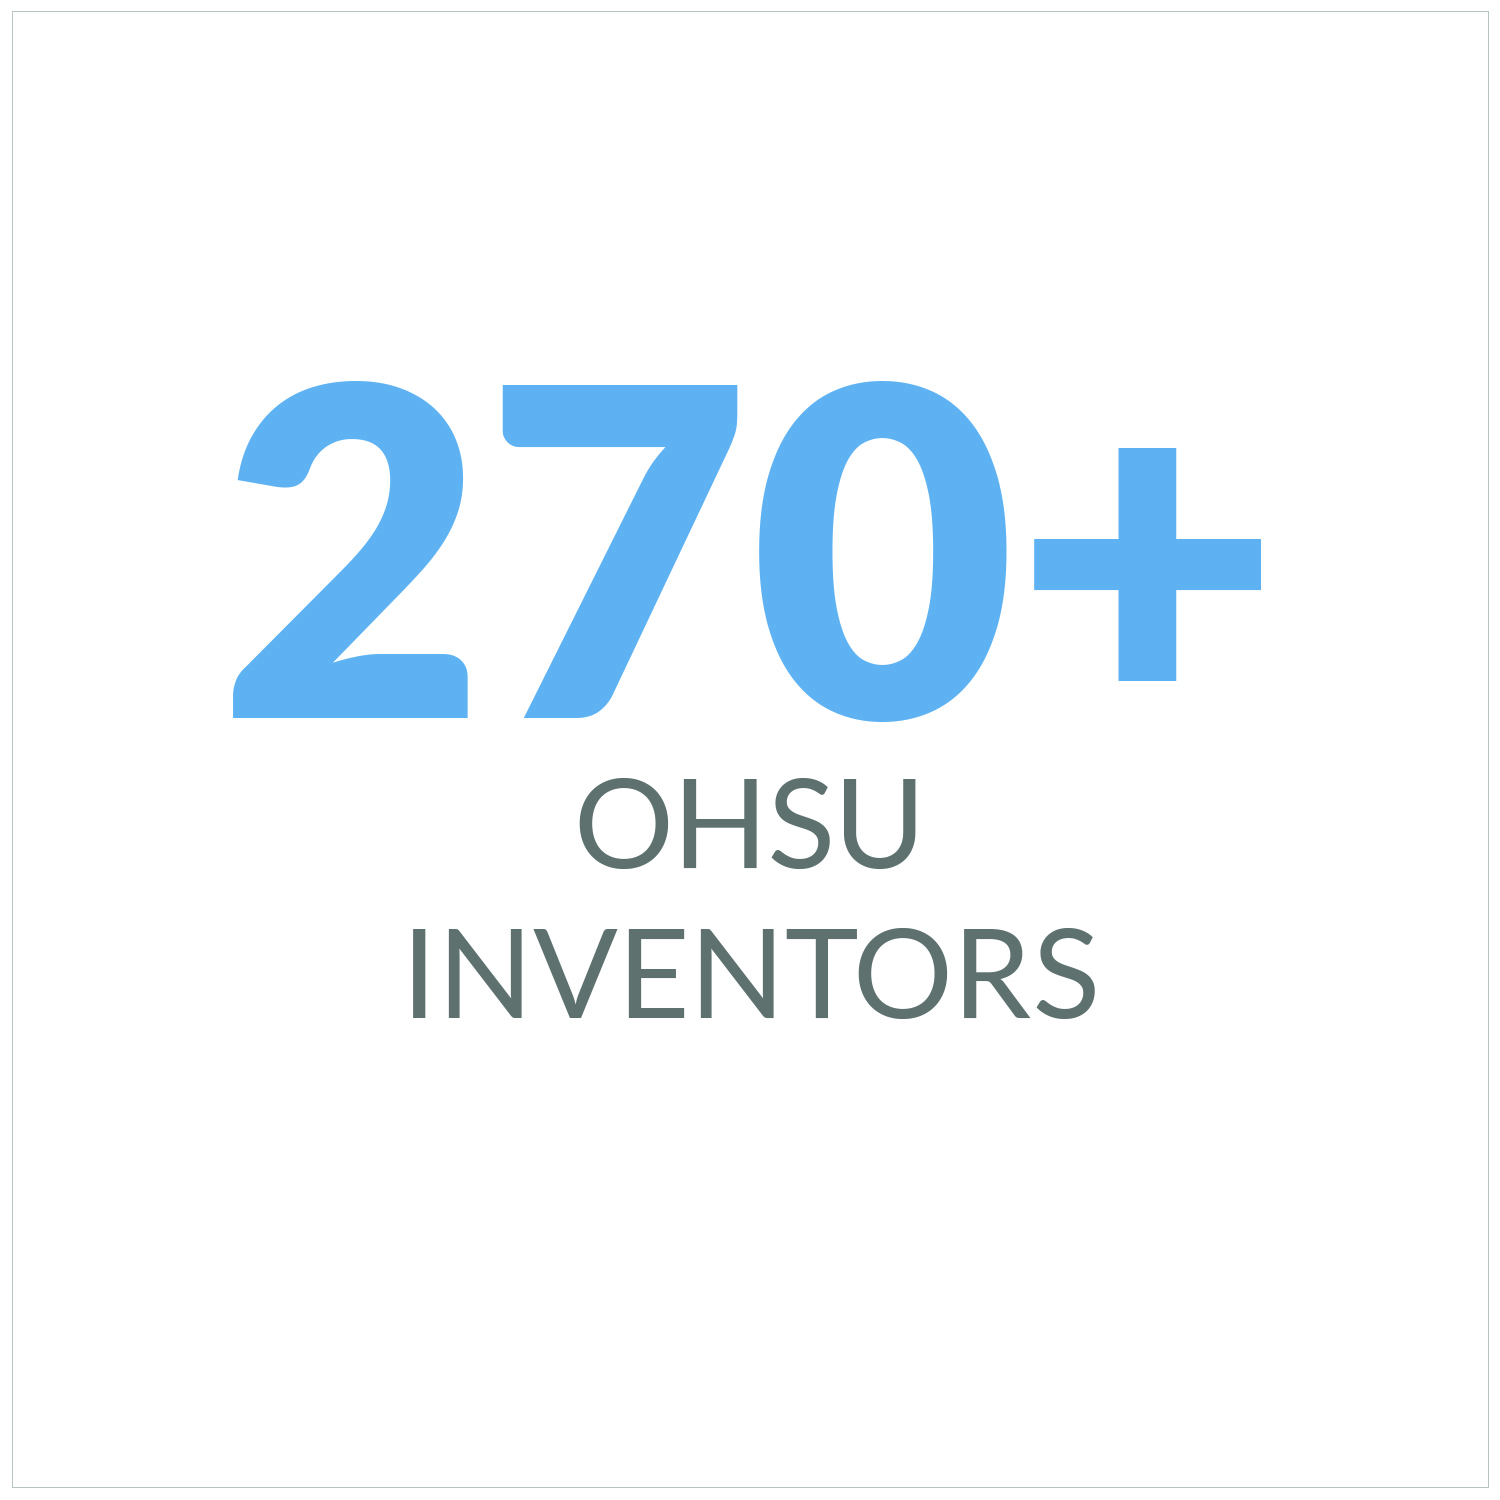 OHSU Innovators